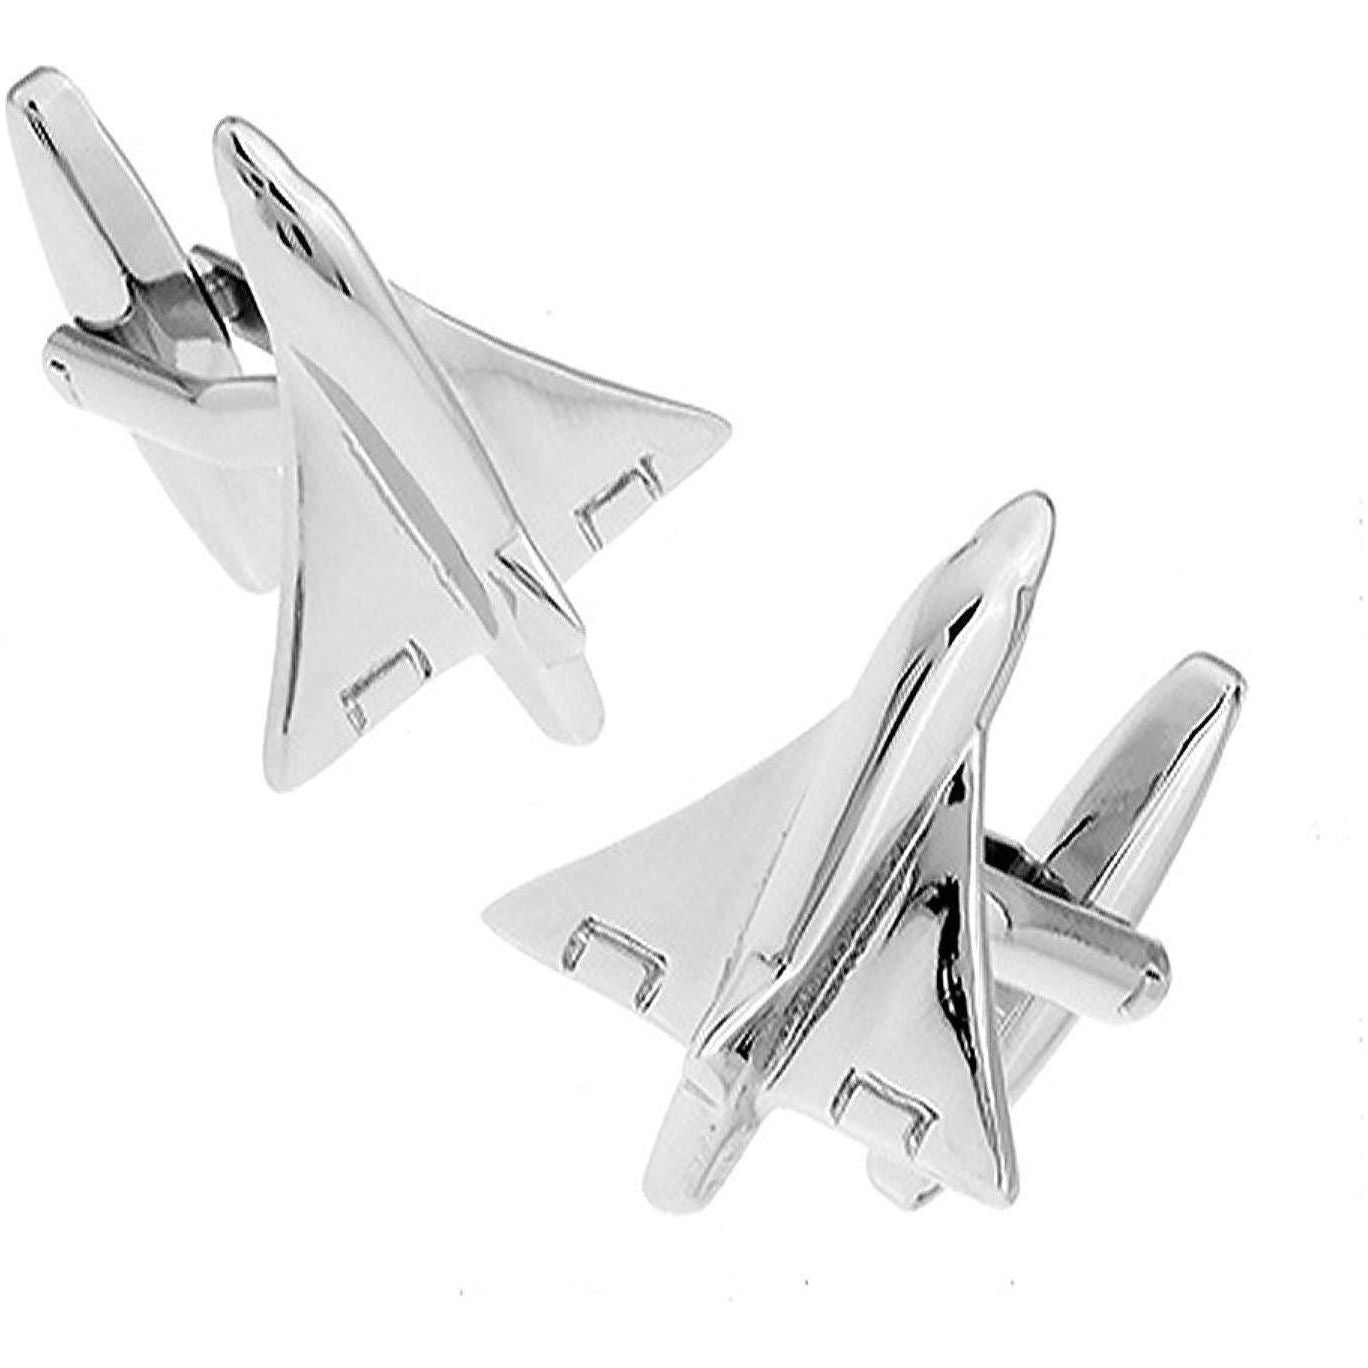 Mach 1 Fighter Jet Aeroplane Cufflinks - Ashton and Finch